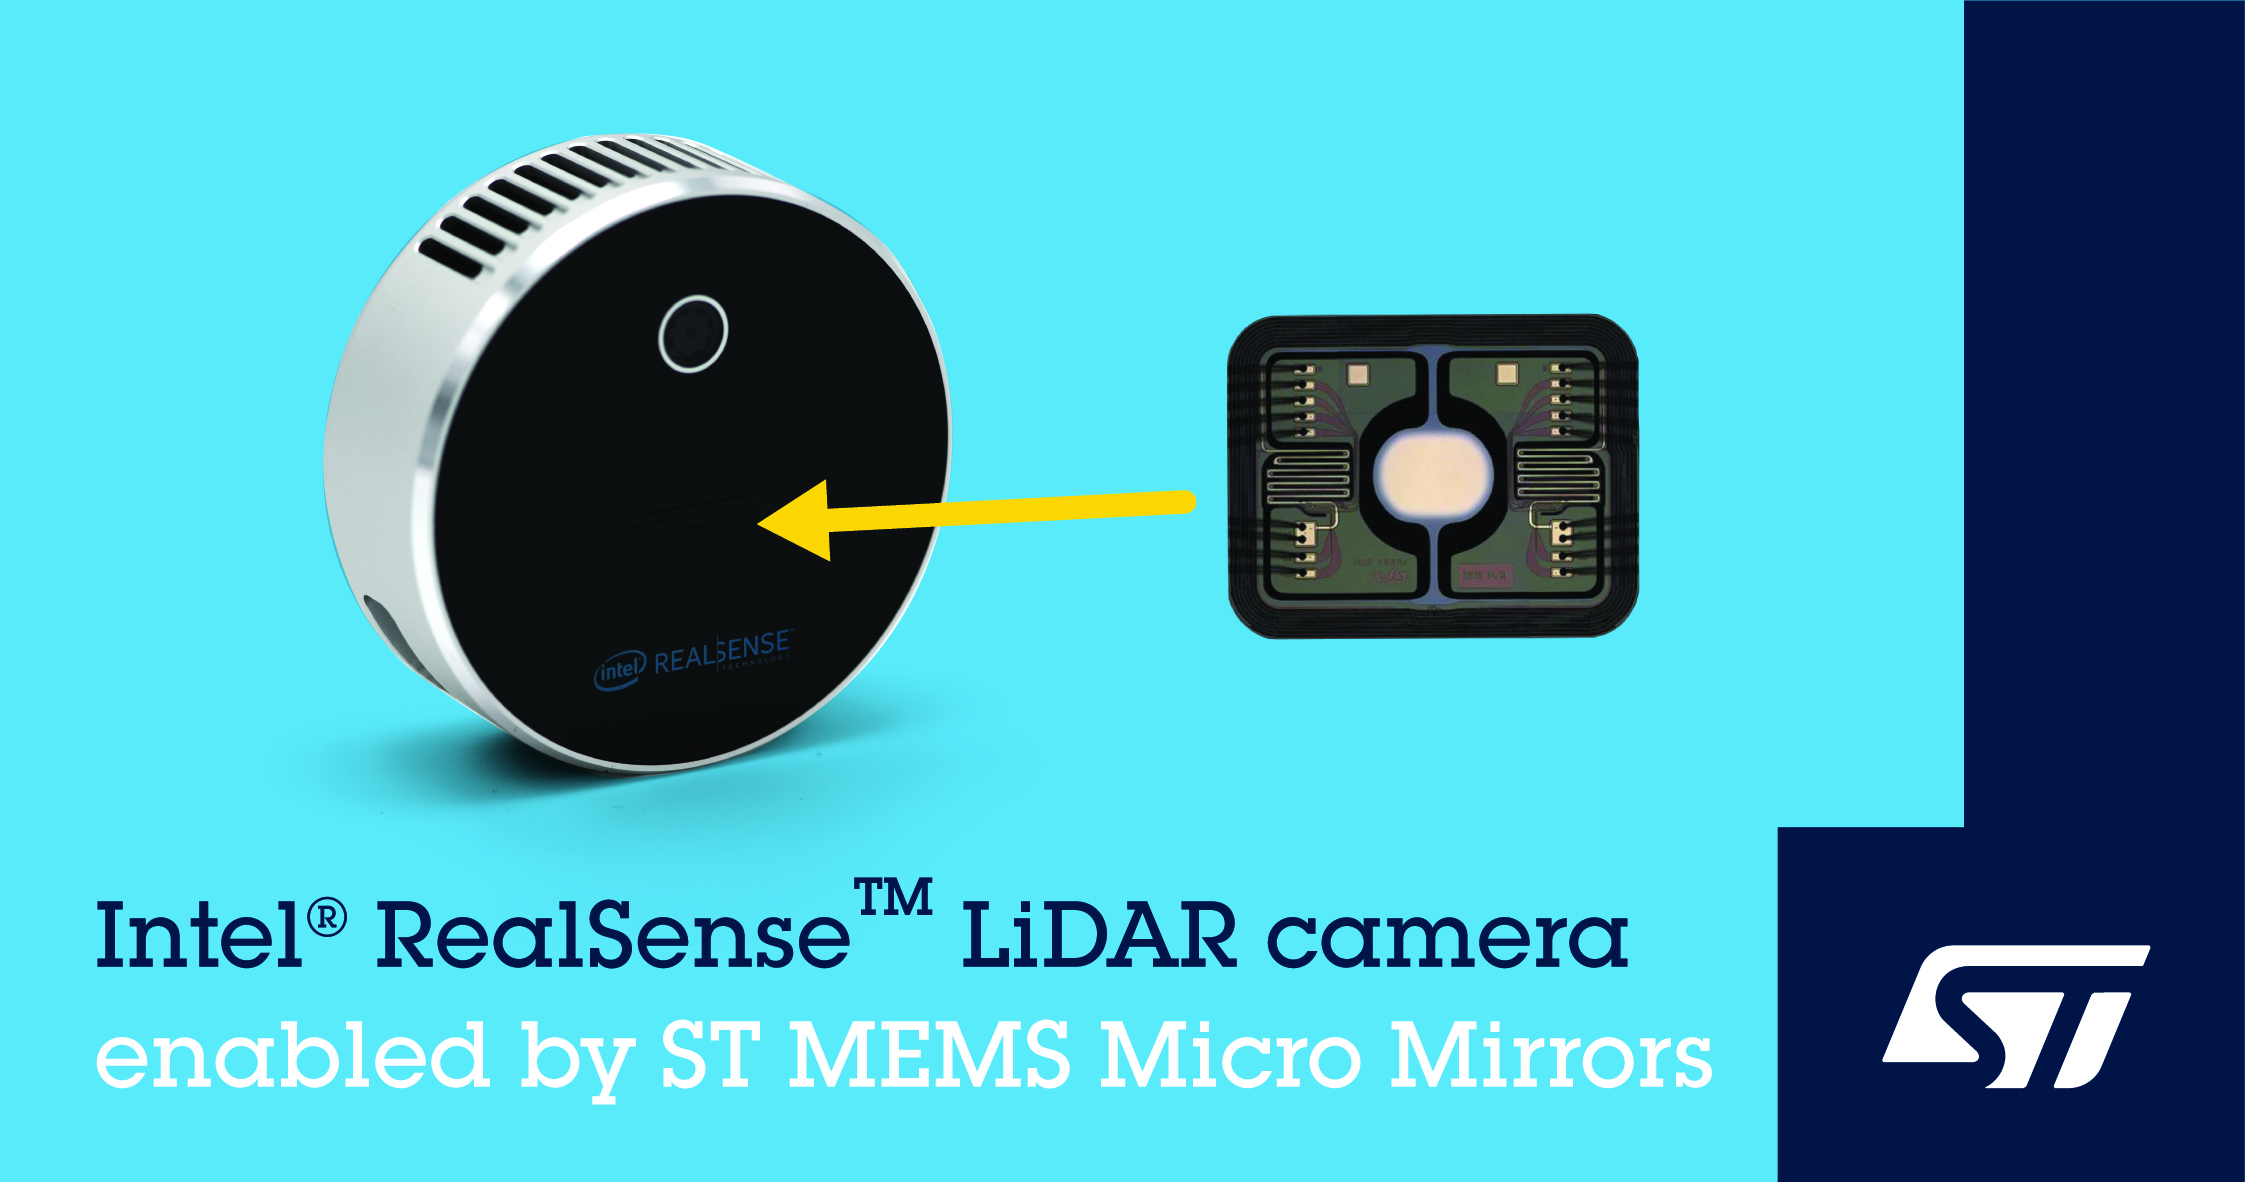 意法半导体世上最小的微镜扫描技术助力英特尔Intel RealSense™高分辨率LiDAR深度摄像头L515